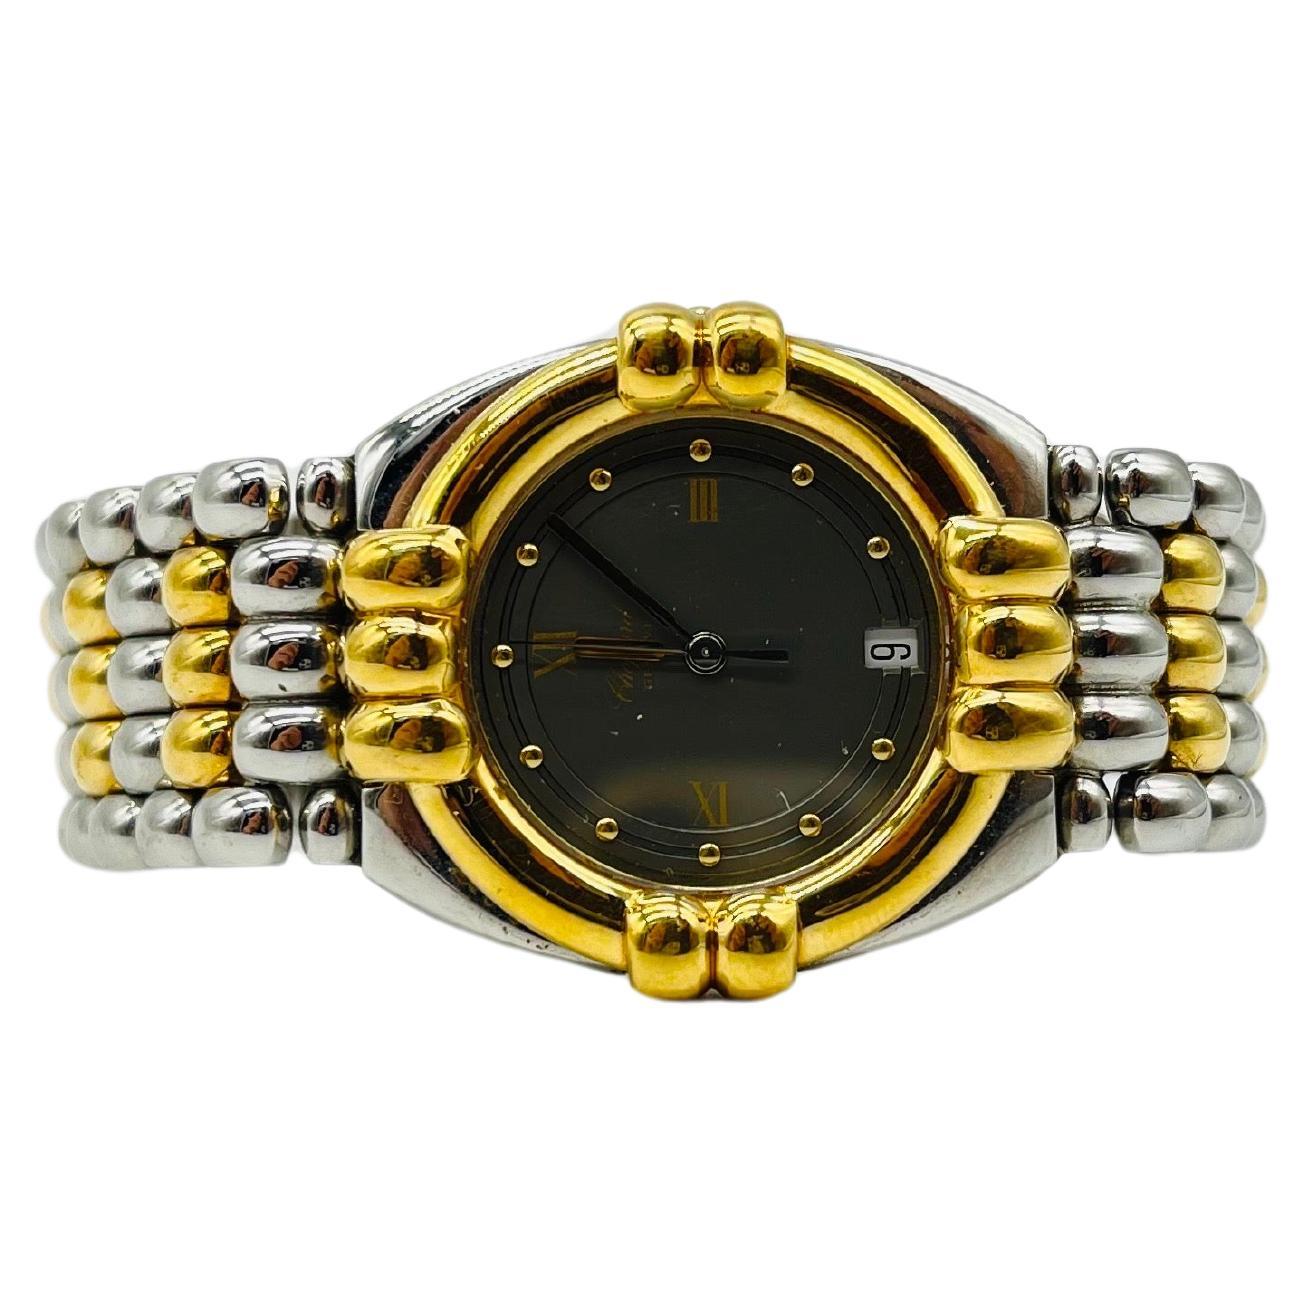 Majestic Chopard genve wrist watch Gstaad 33/8120 For Sale 4